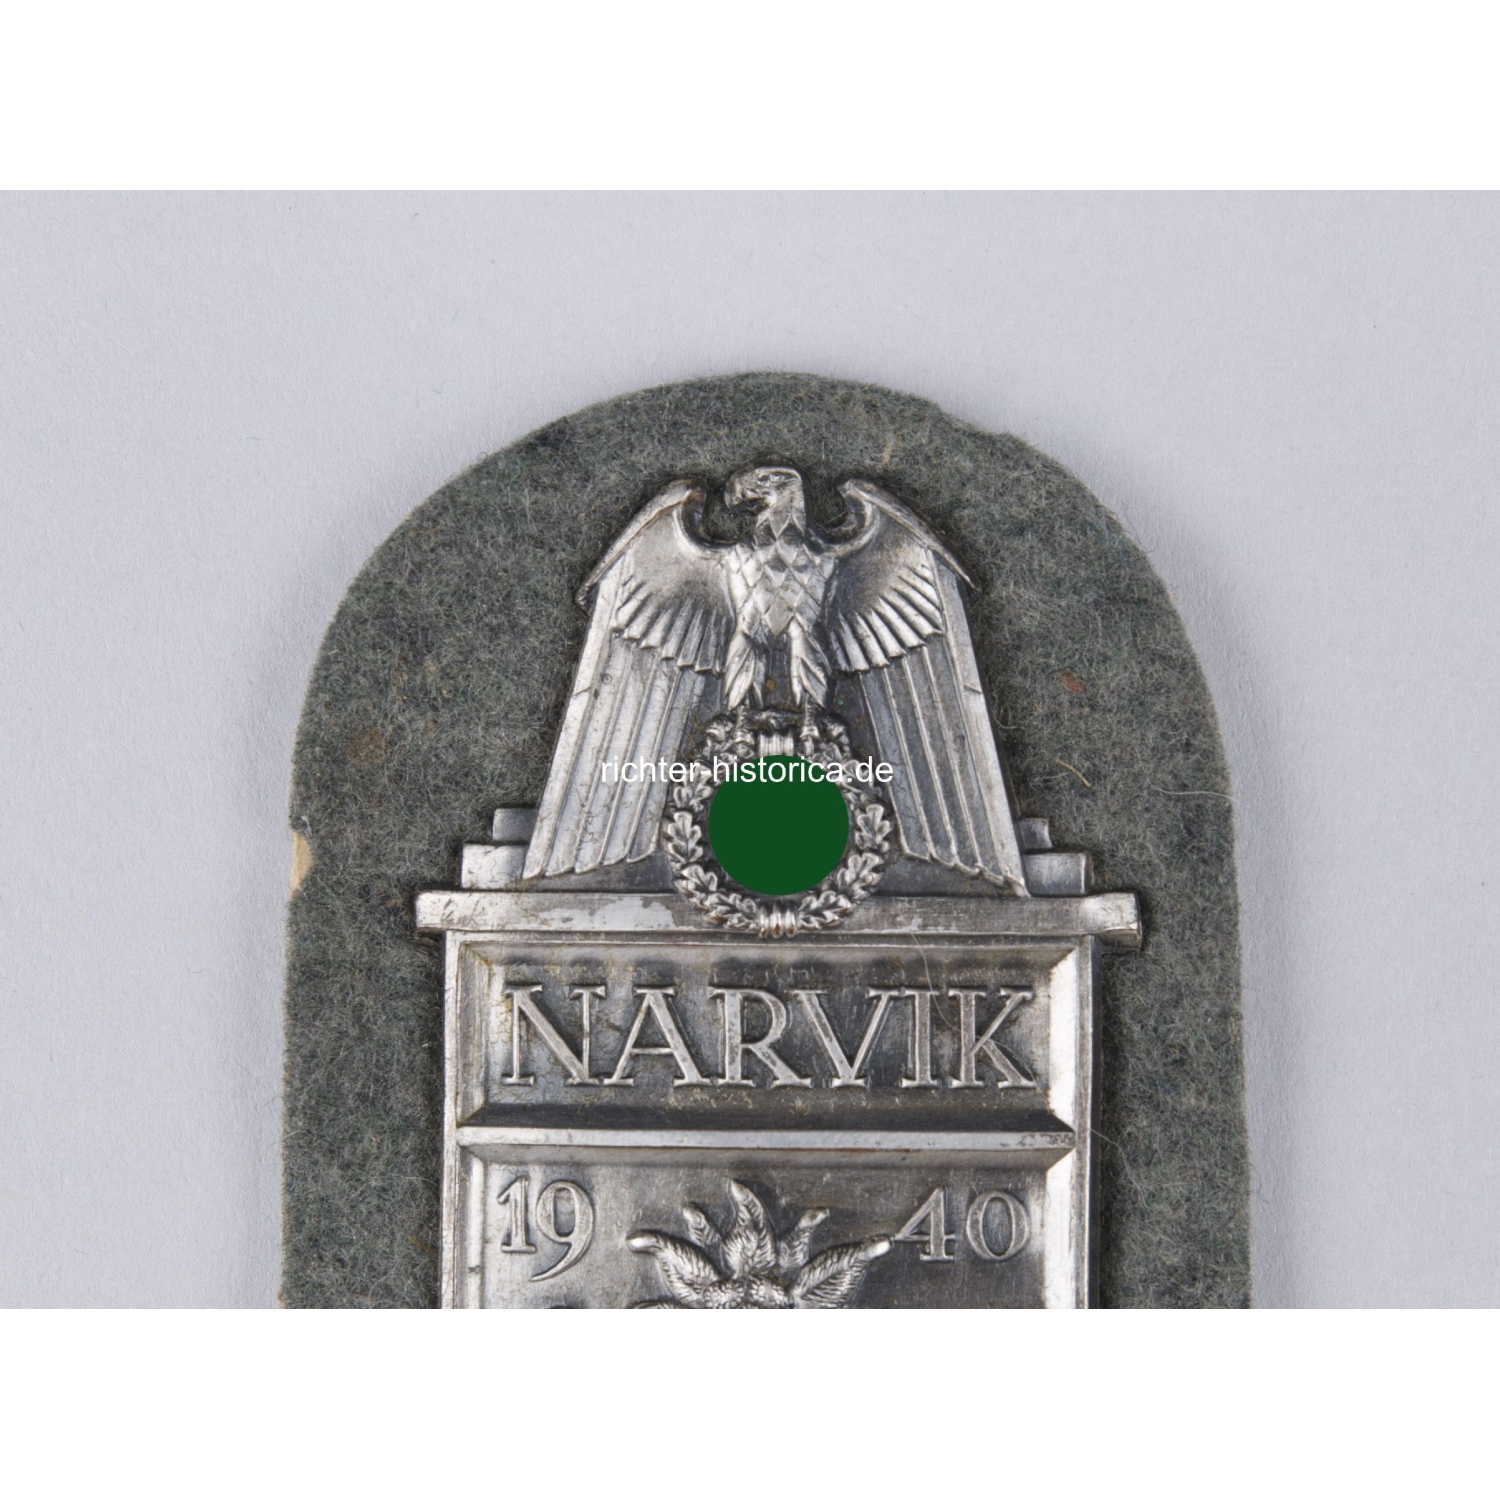 Narvik Cupal Ärmelabzeichen auf Heeresstoff